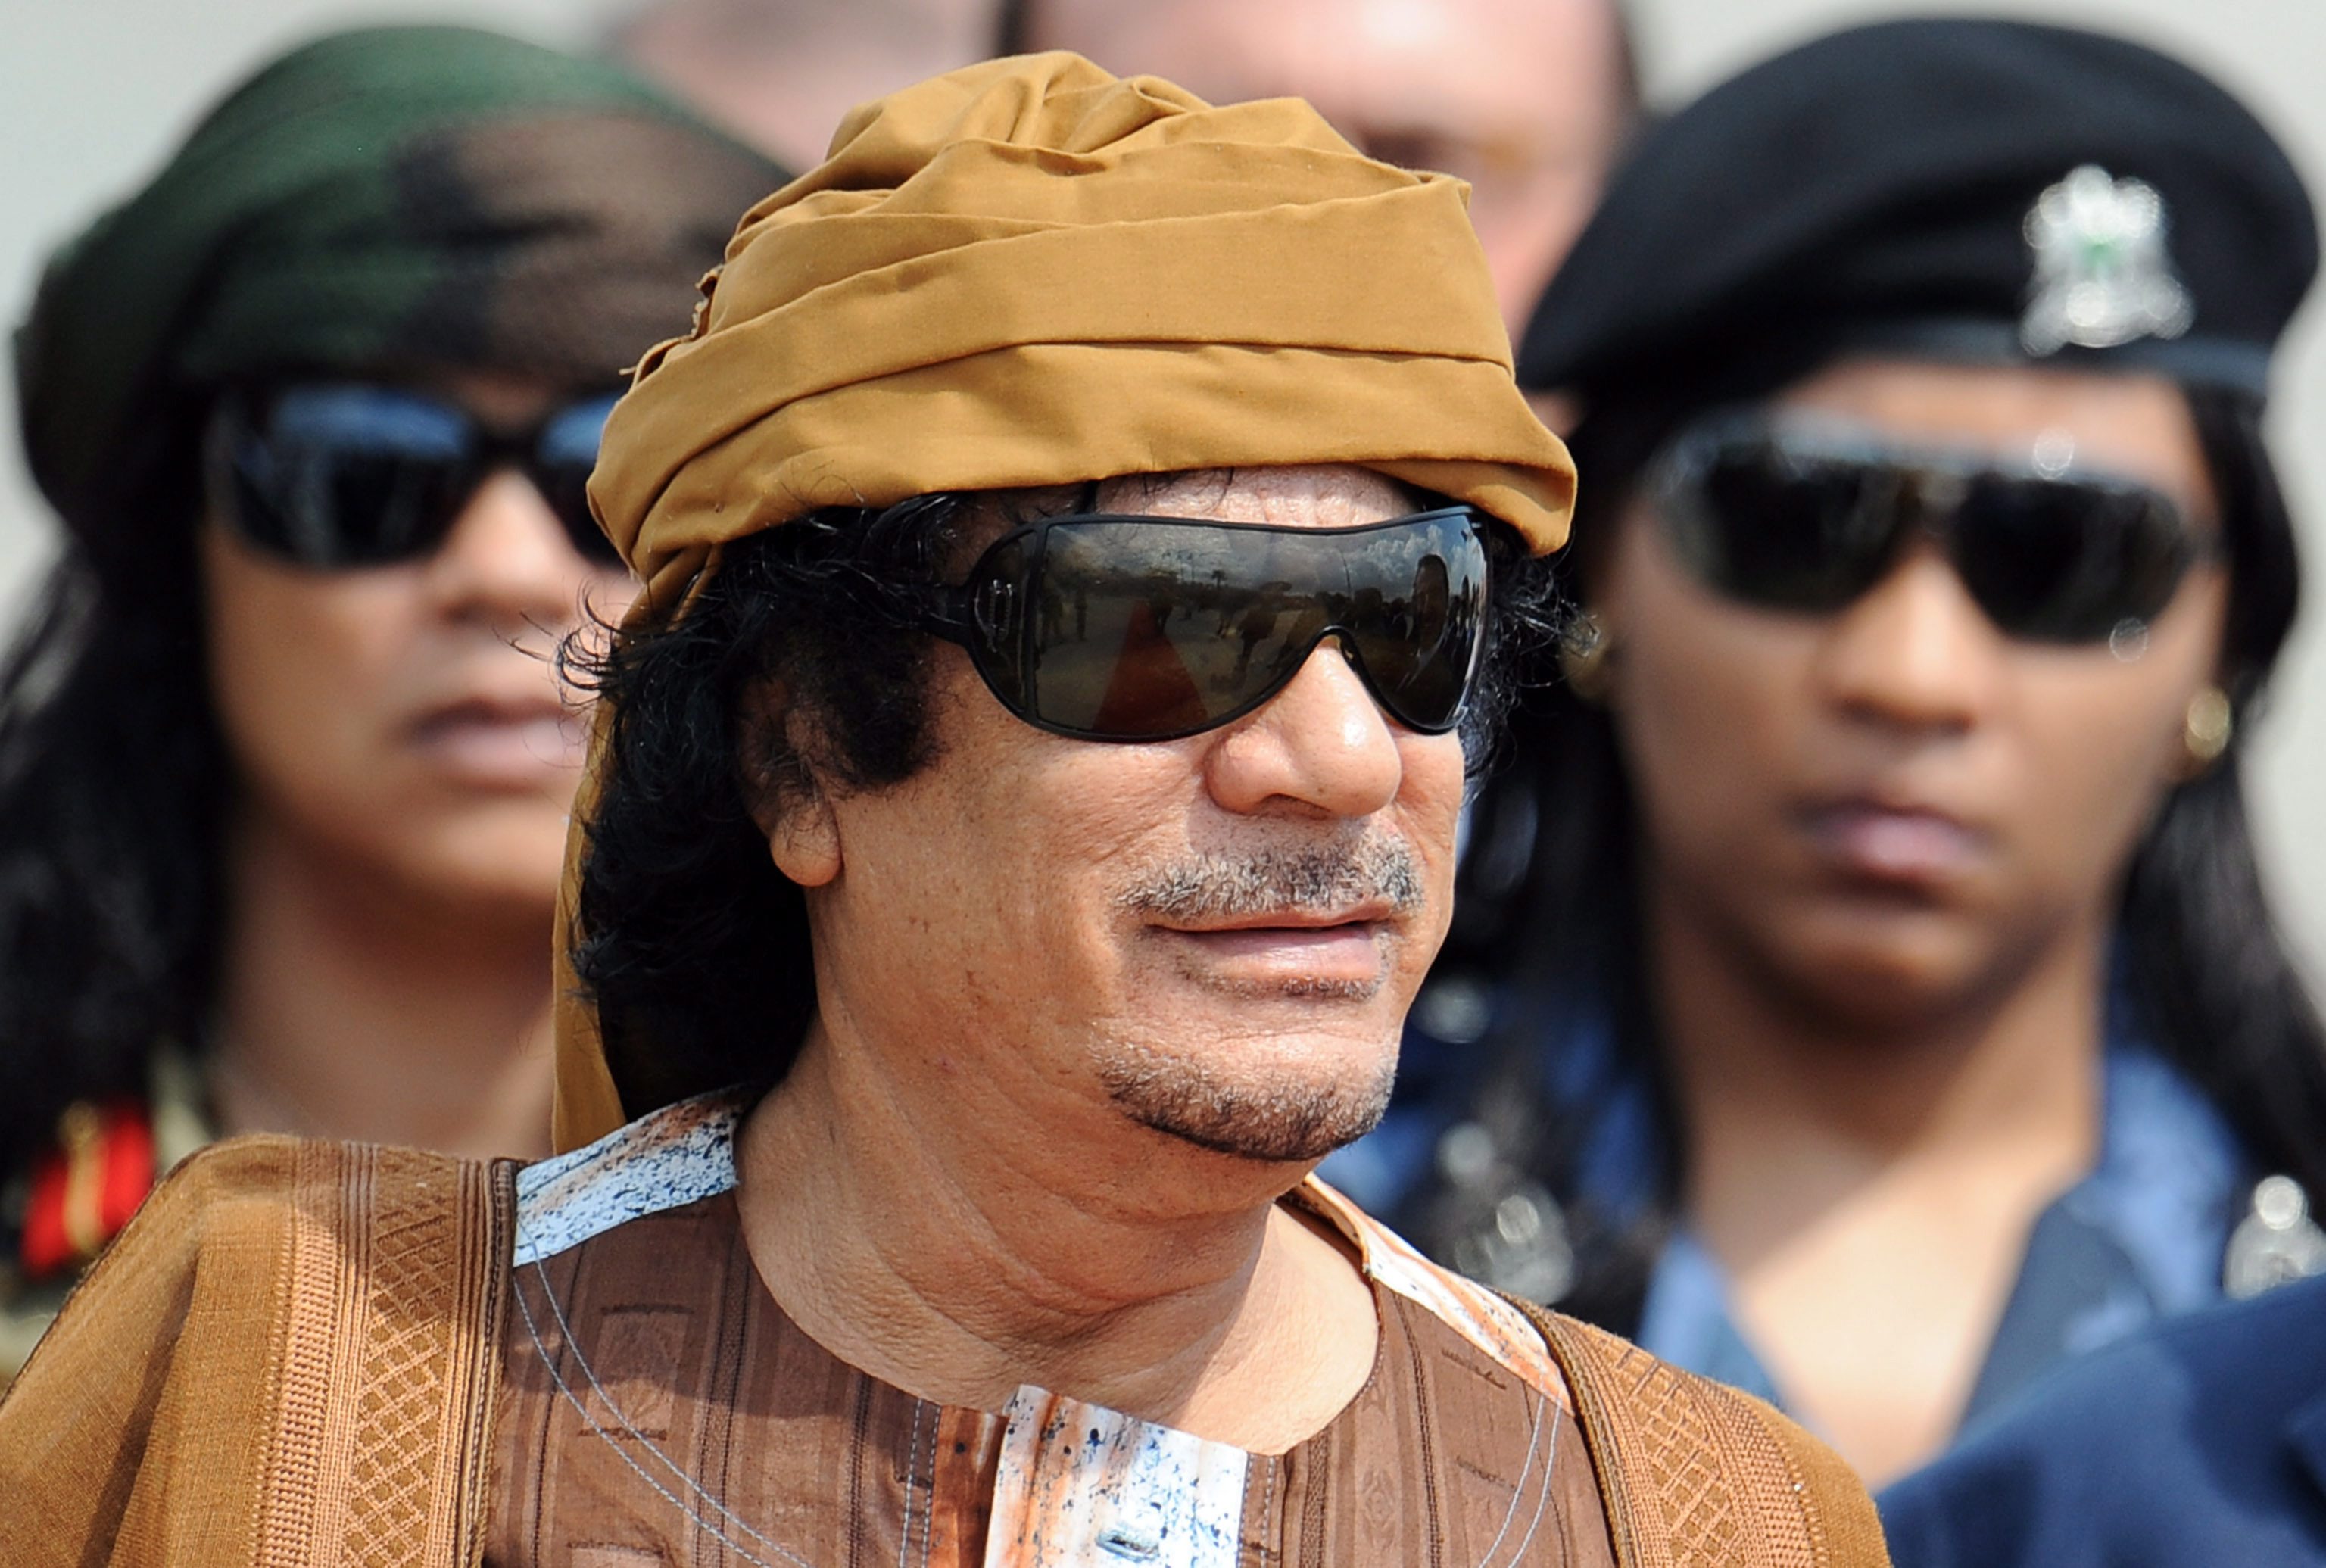 Αποκαλύψεις-σοκ για Καντάφι: Εχθροί στην κατάψυξη, μπουντρούμια του σεξ